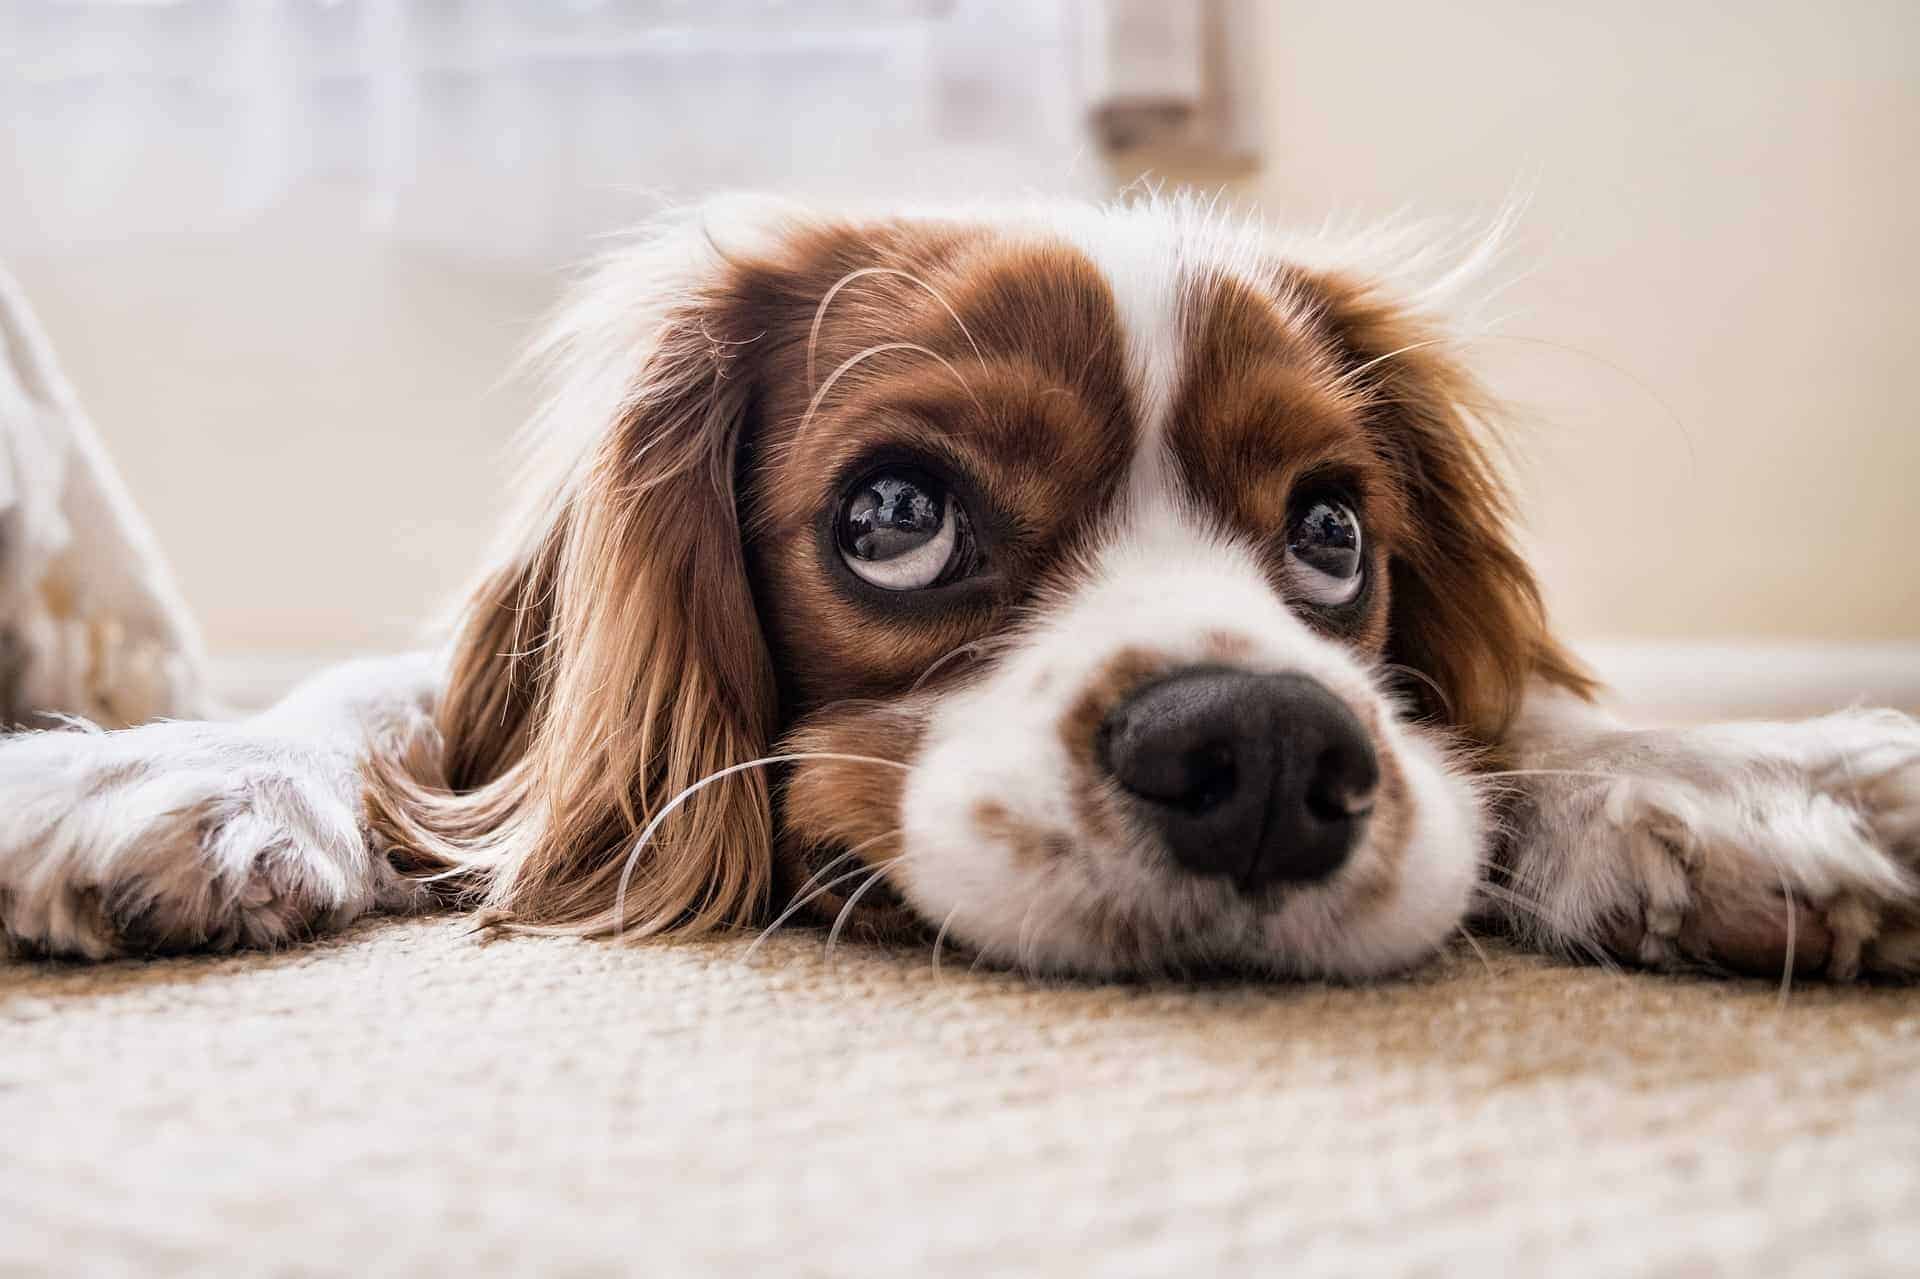 Hund schaut skeptisch in die Kamera. /Foto: pixabay